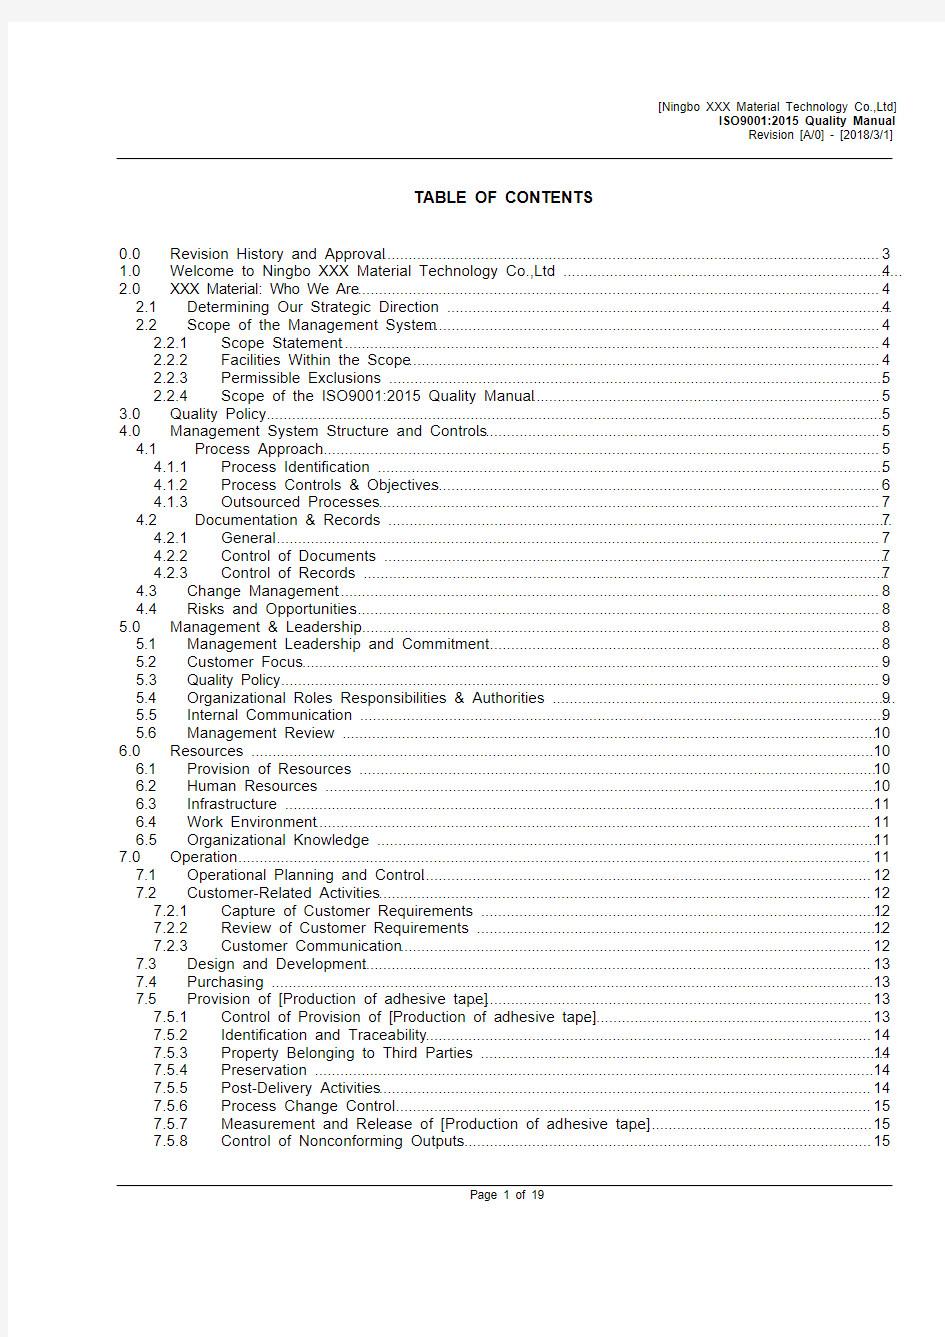 ISO9001：2015全套文件英文版(含质量手册及全套程序文件)